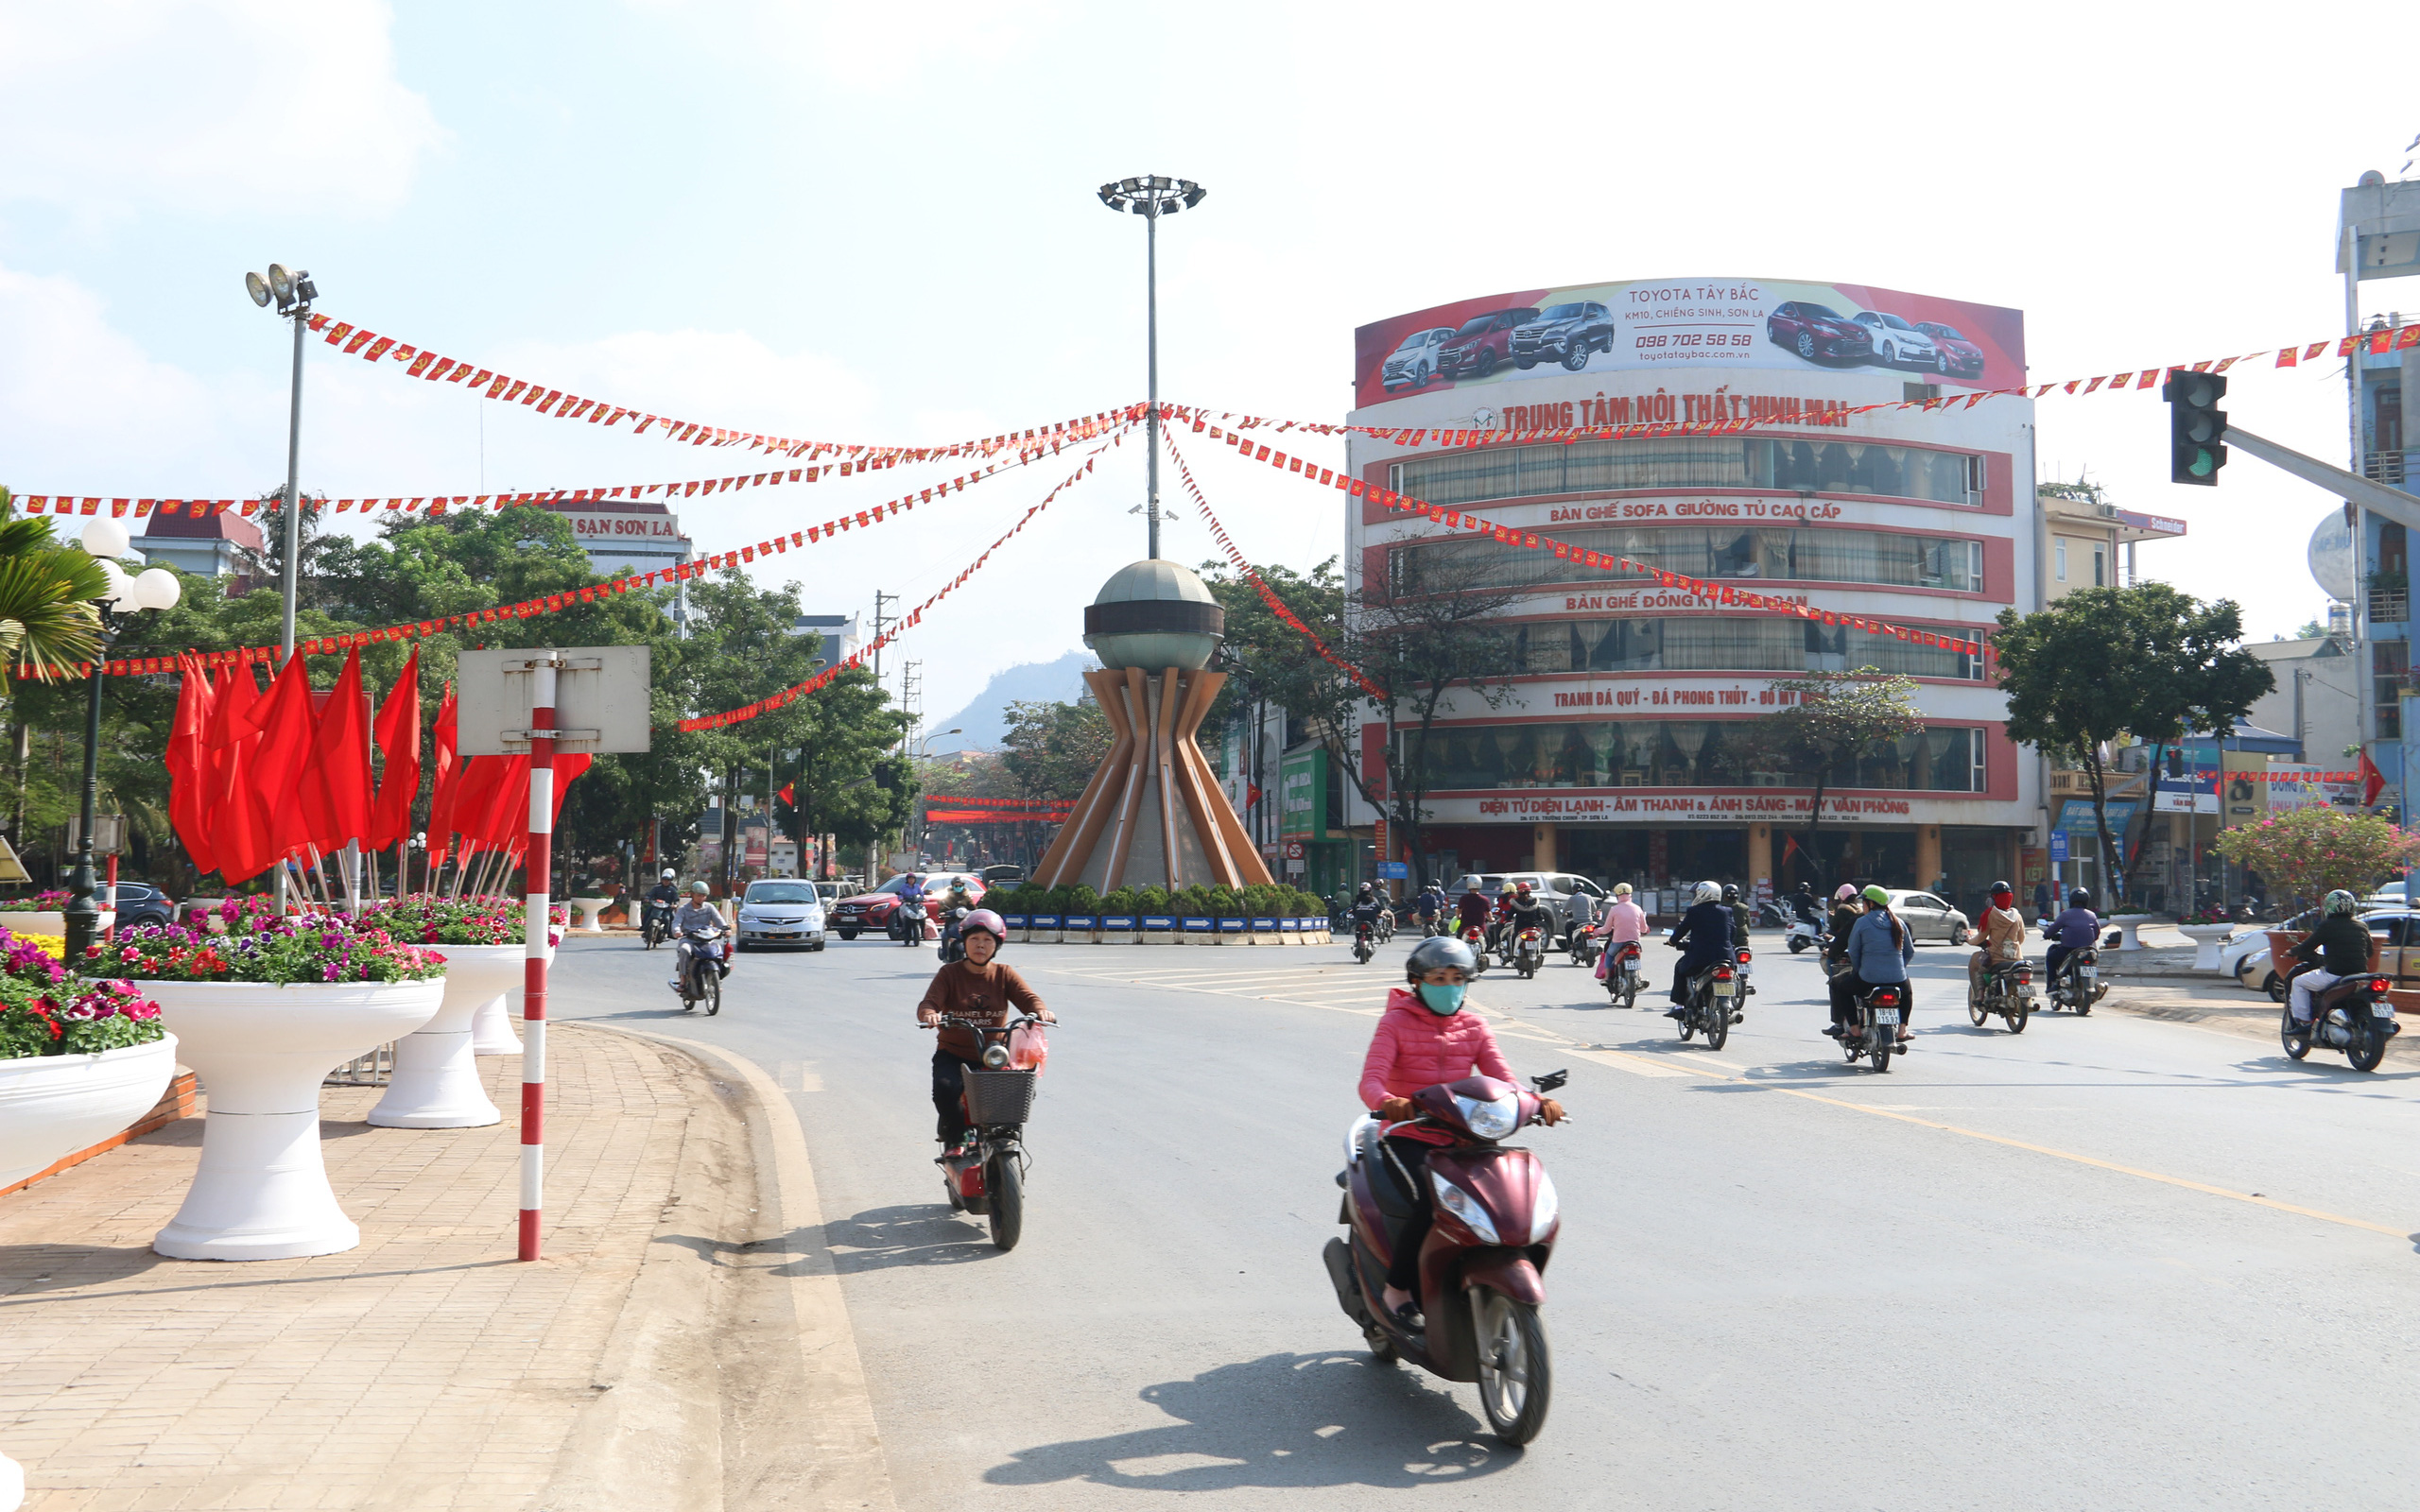 Thành phố Sơn La: Tạm  dừng các dịch vụ nhà hàng ăn uống, quán ăn sáng, quán cà phê